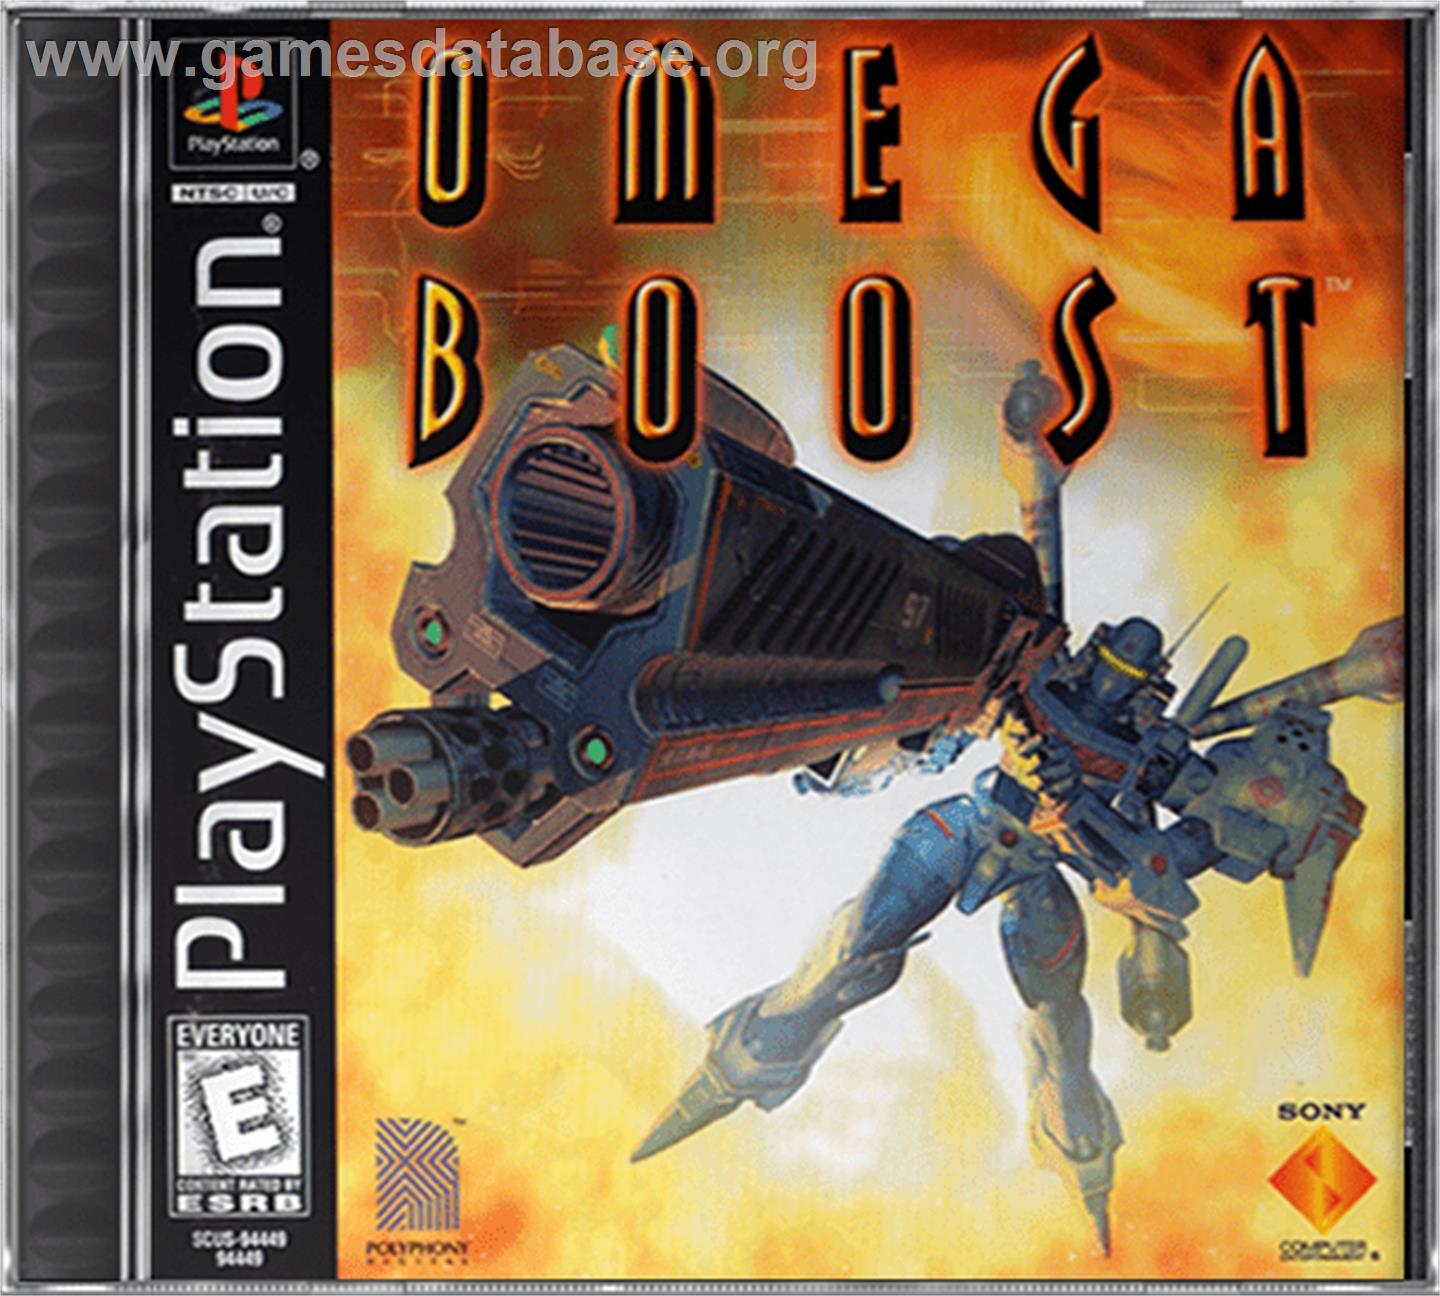 Omega Boost - Sony Playstation - Artwork - Box